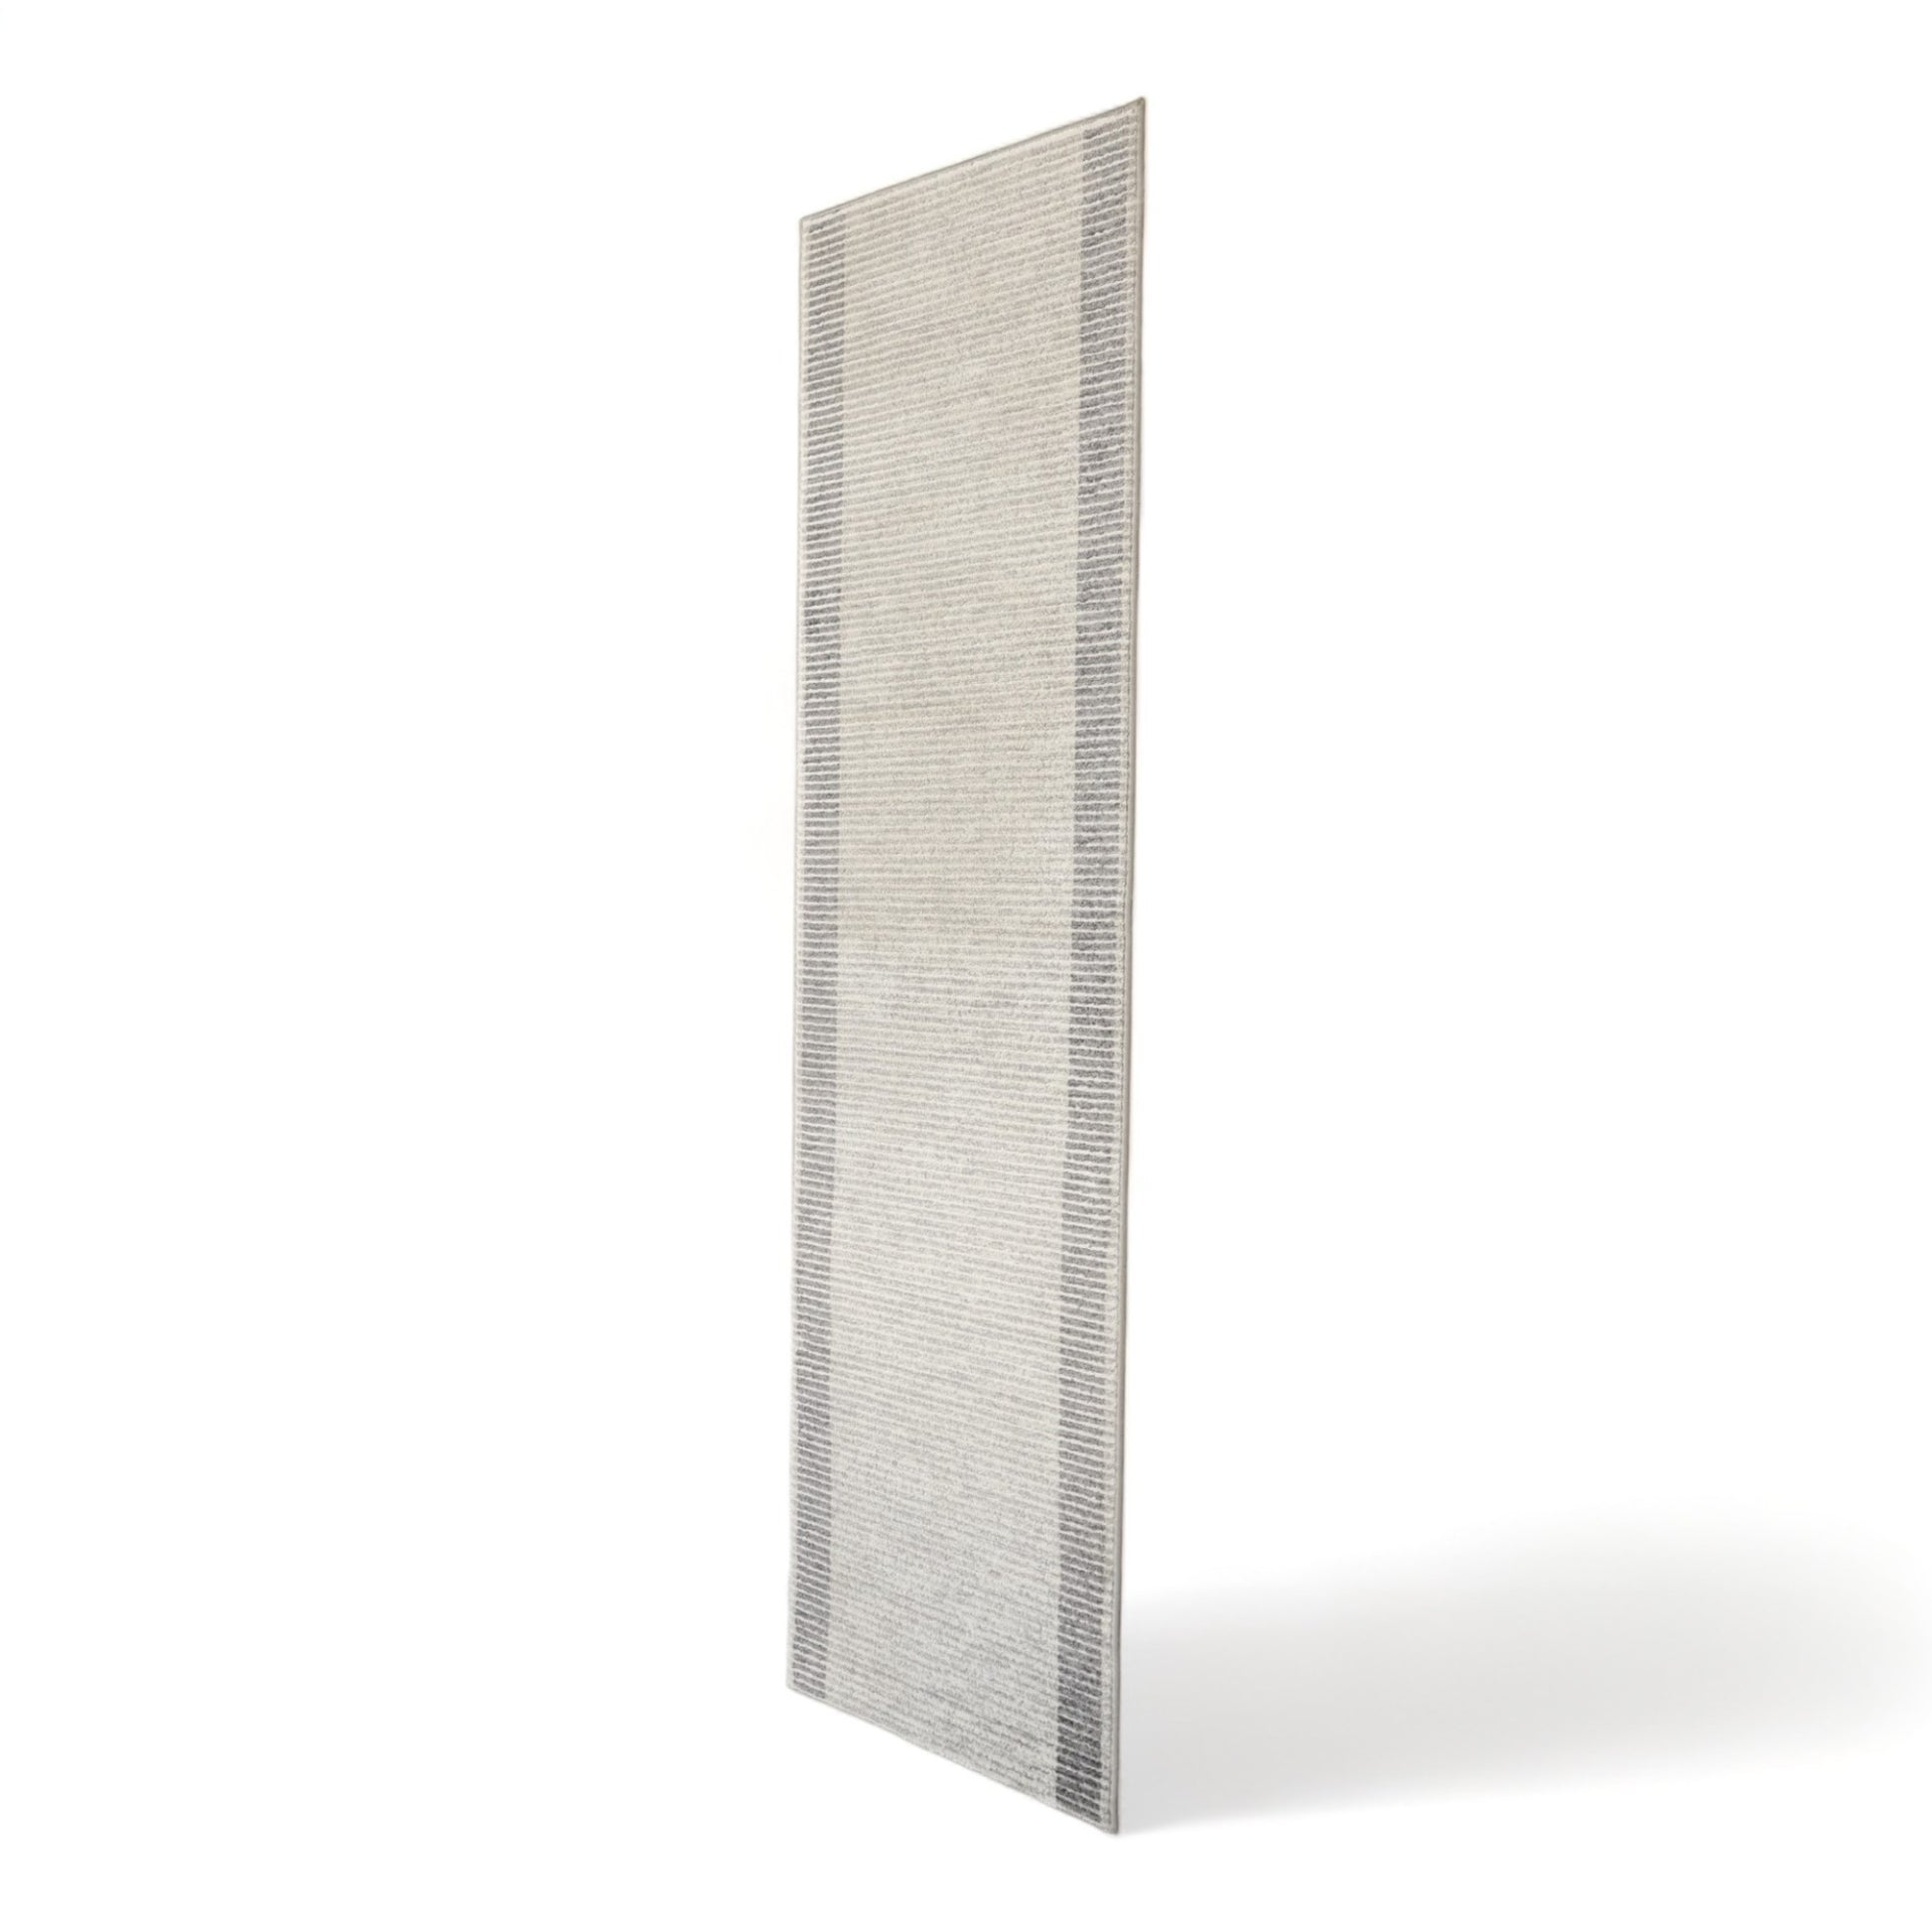 Nyrenset | Sort og hvit teppe. 300cm